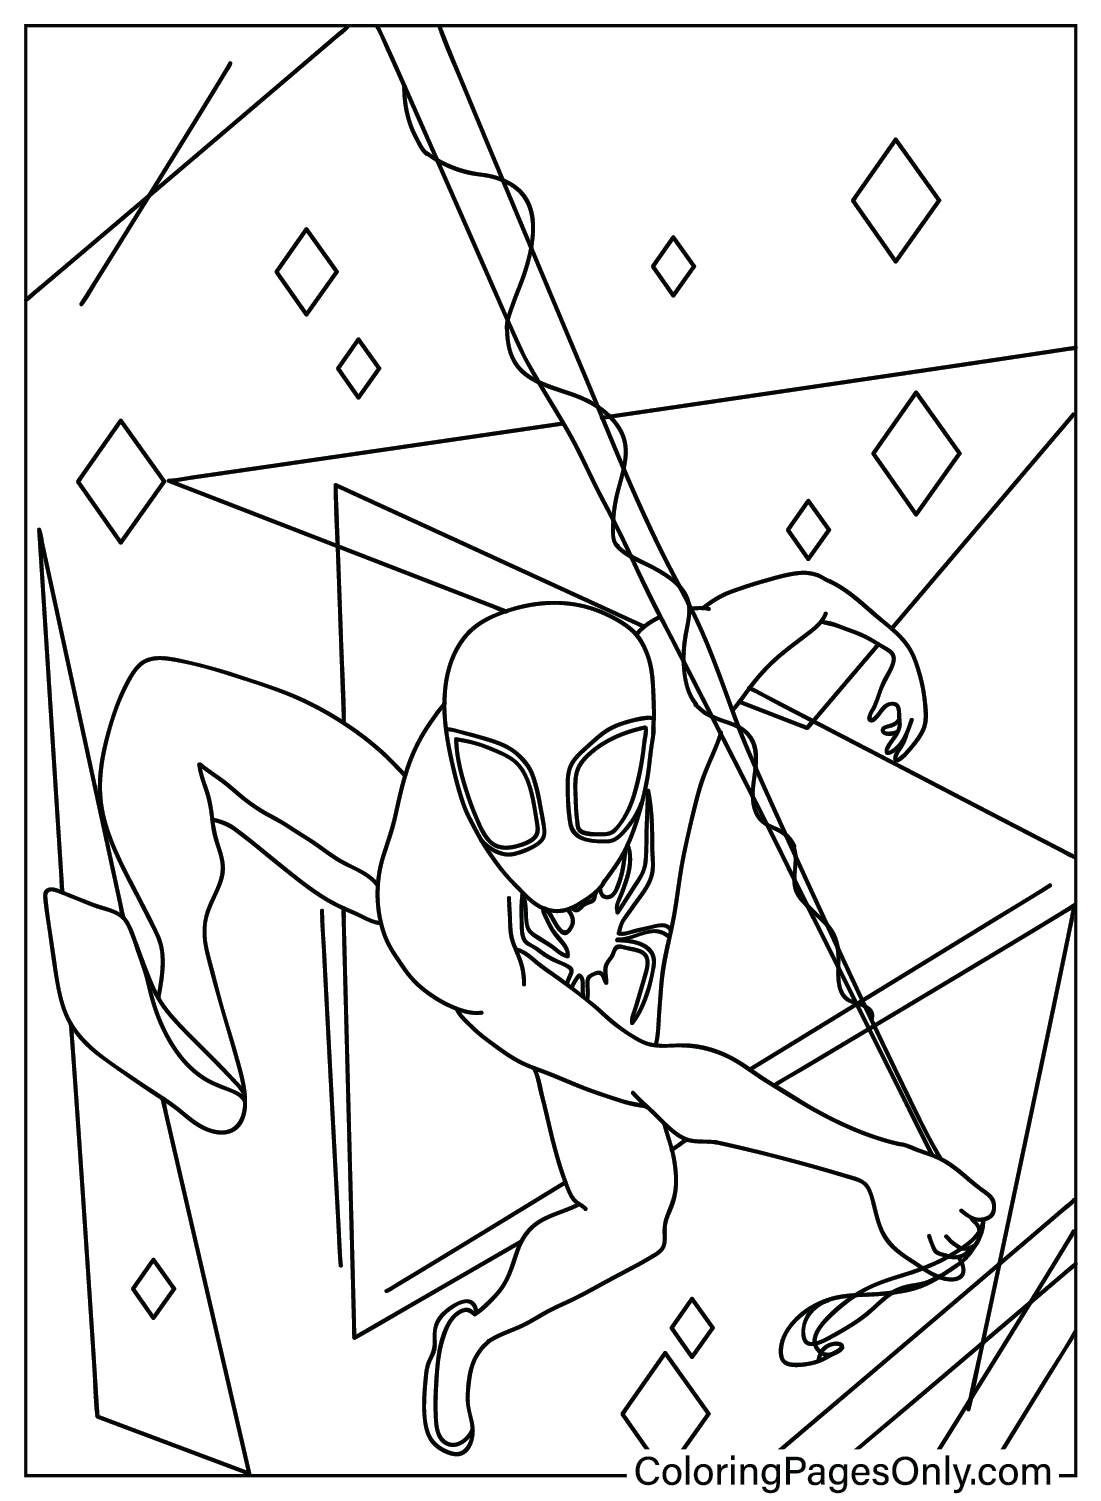 Desenhos para colorir do Homem-Aranha para descarregar - Spiderman - Just  Color Crianças : Páginas para colorir para crianças